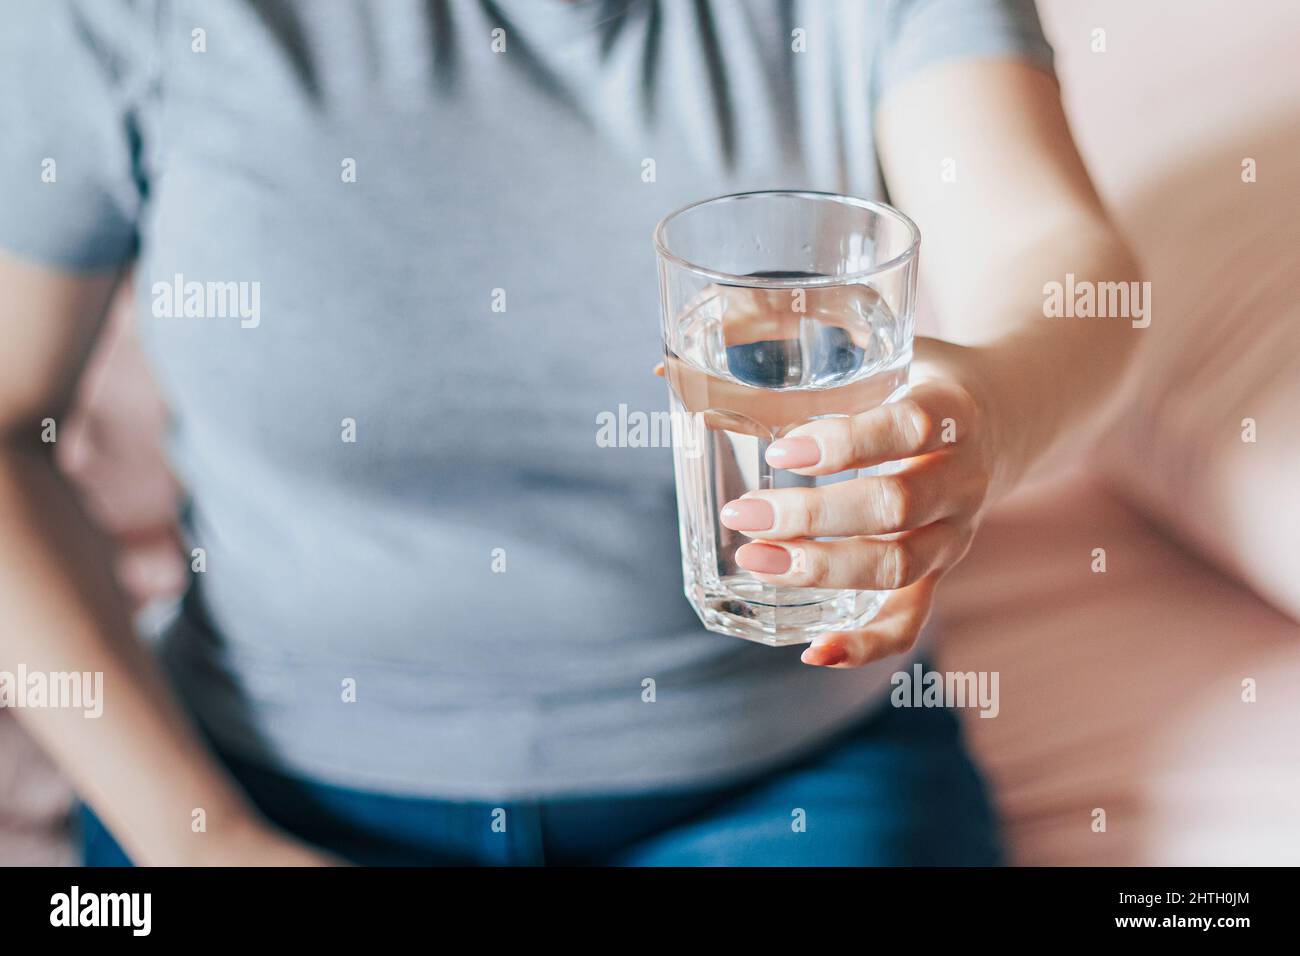 Une femme s'assoit dans son lit et tient un verre d'eau propre dans ses mains. Journée mondiale de l'eau. Concept de soins de santé. Boire de l'eau le matin pour stimuler le métabolisme. Banque D'Images